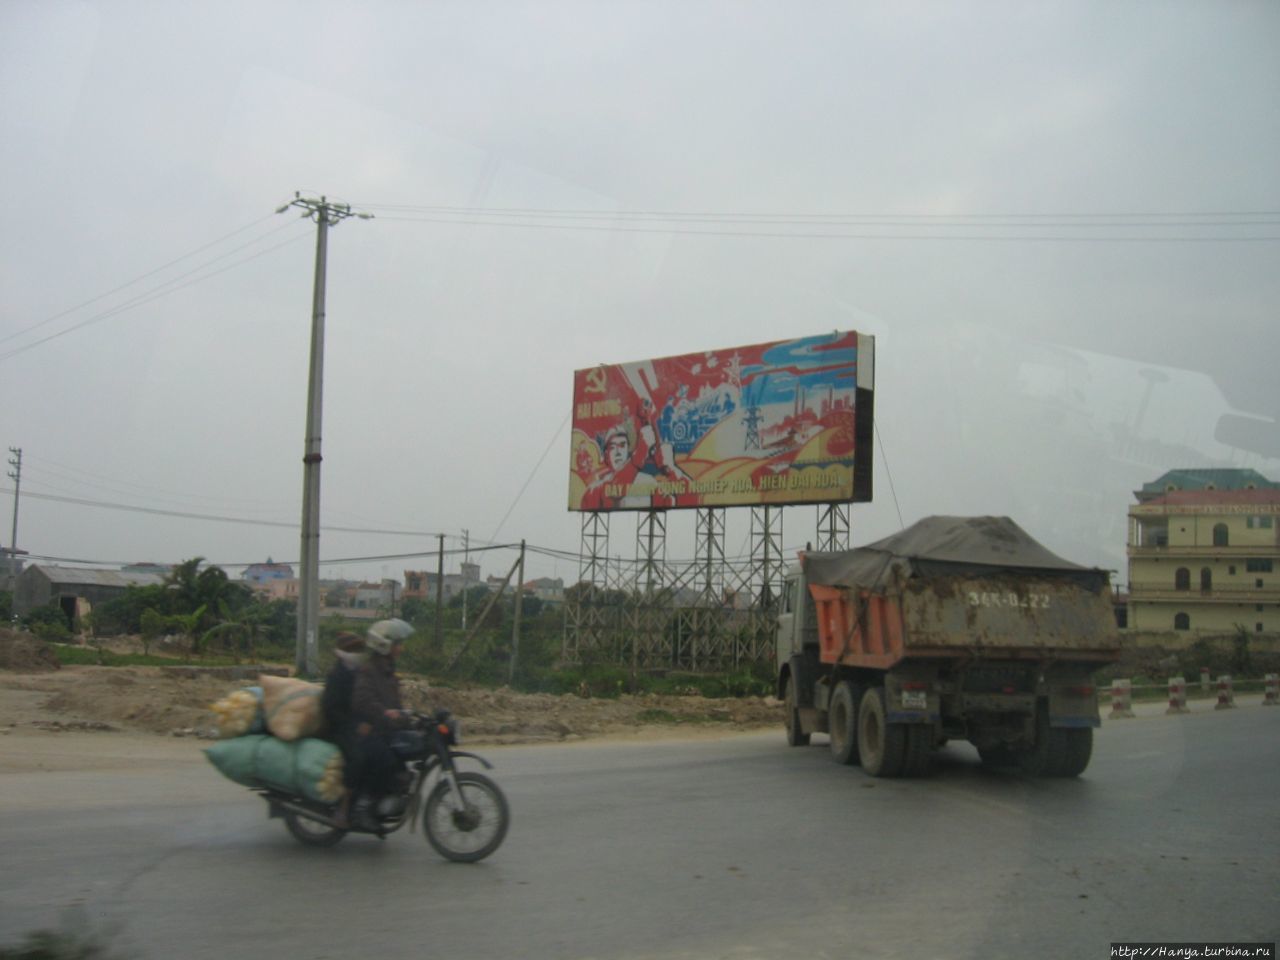 Политагитки на дорогах Вьетнама Ханой, Вьетнам